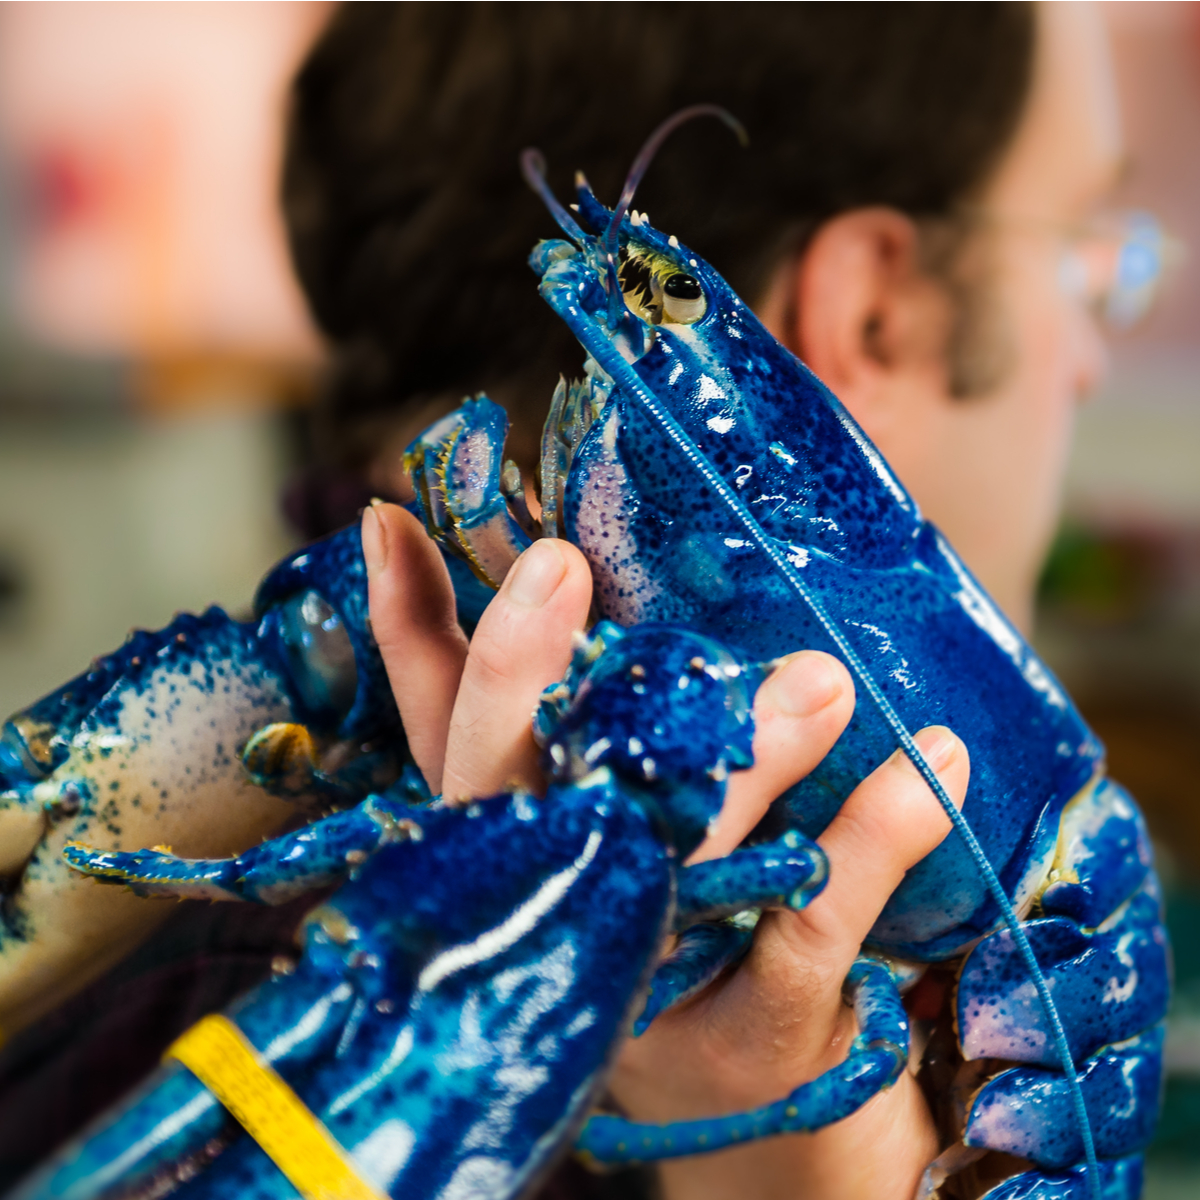 Blue Lobster Gets Home At Aquarium